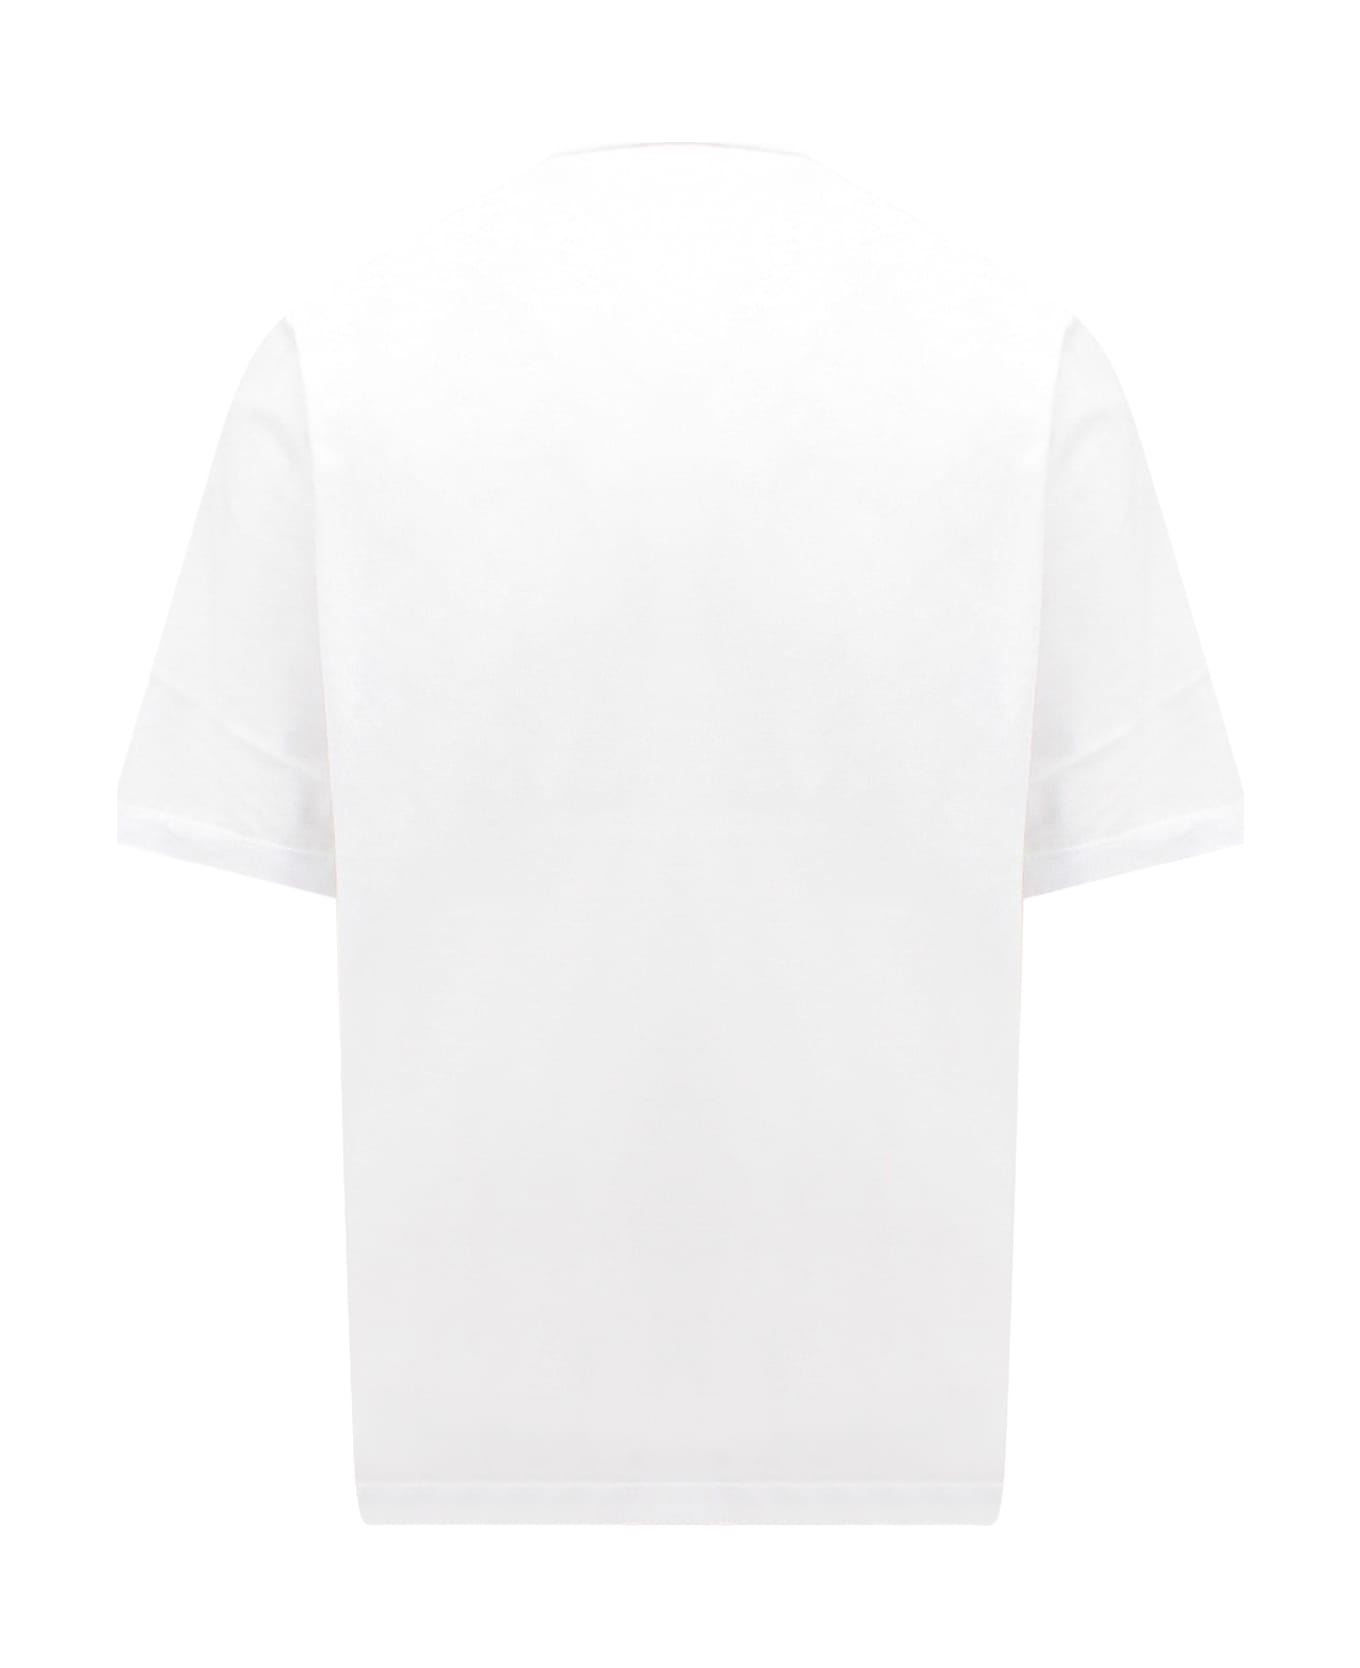 Dsquared2 T-shirt - WHITE